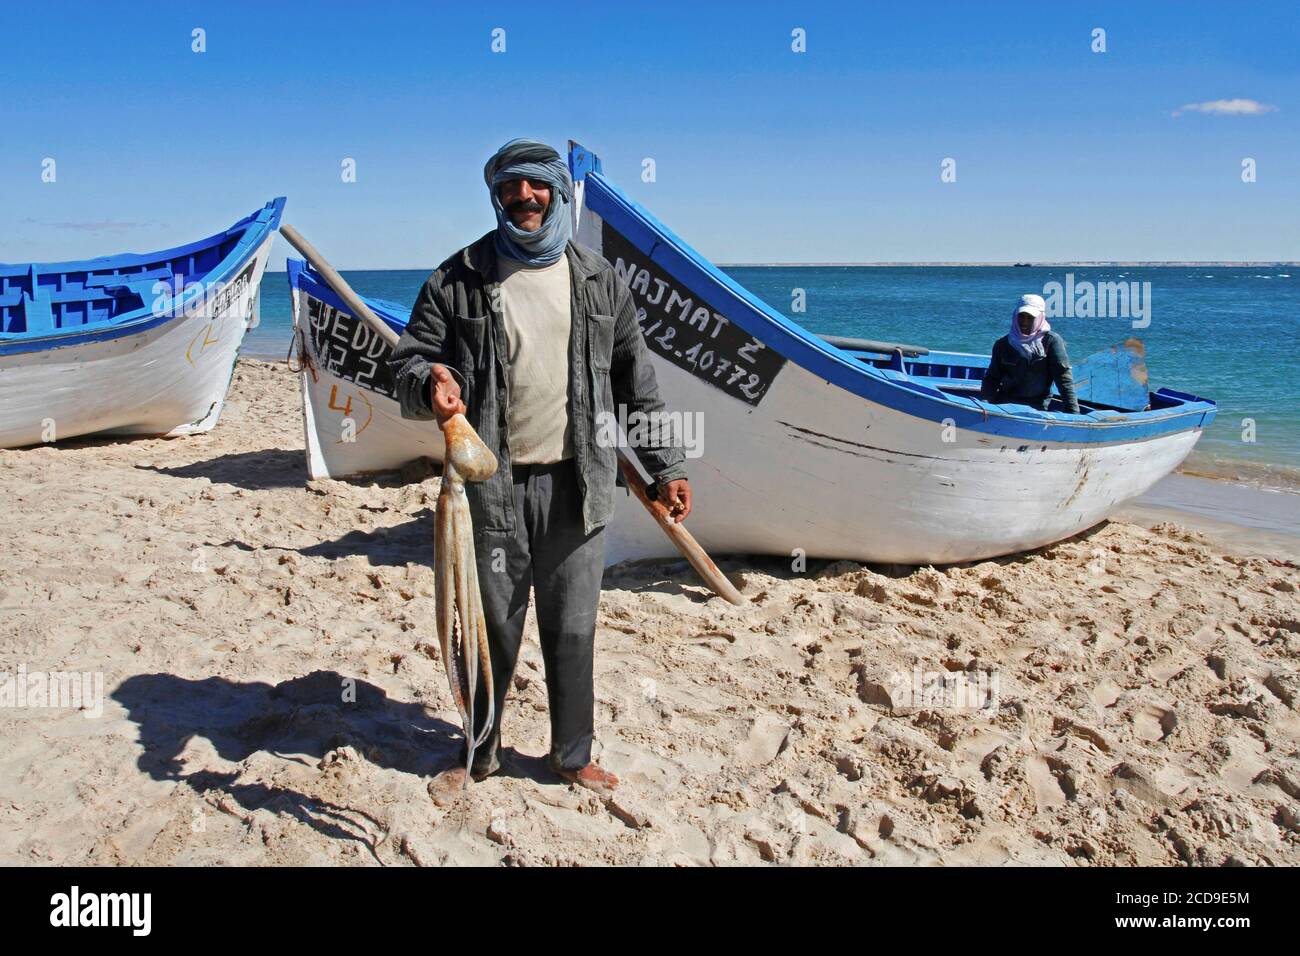 Marruecos, Sáhara Occidental, Dakhla, pescador con un pulpo en la mano frente a un barco en la playa Foto de stock